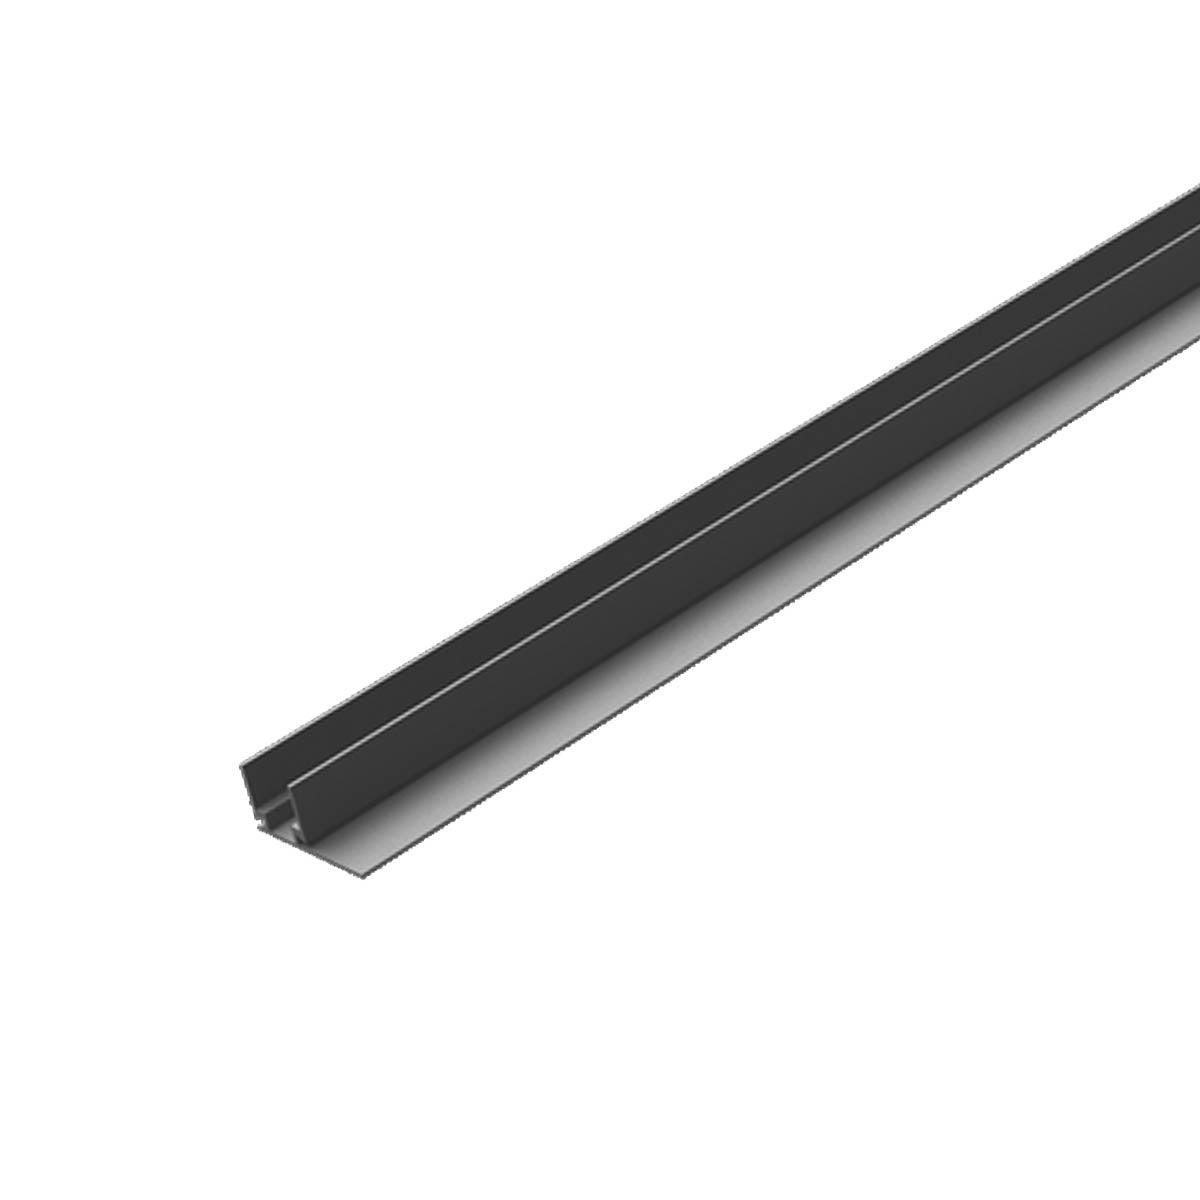 NeonFlex PRO-L 1m, Black Aluminum “F” Channel + 20mm Flange